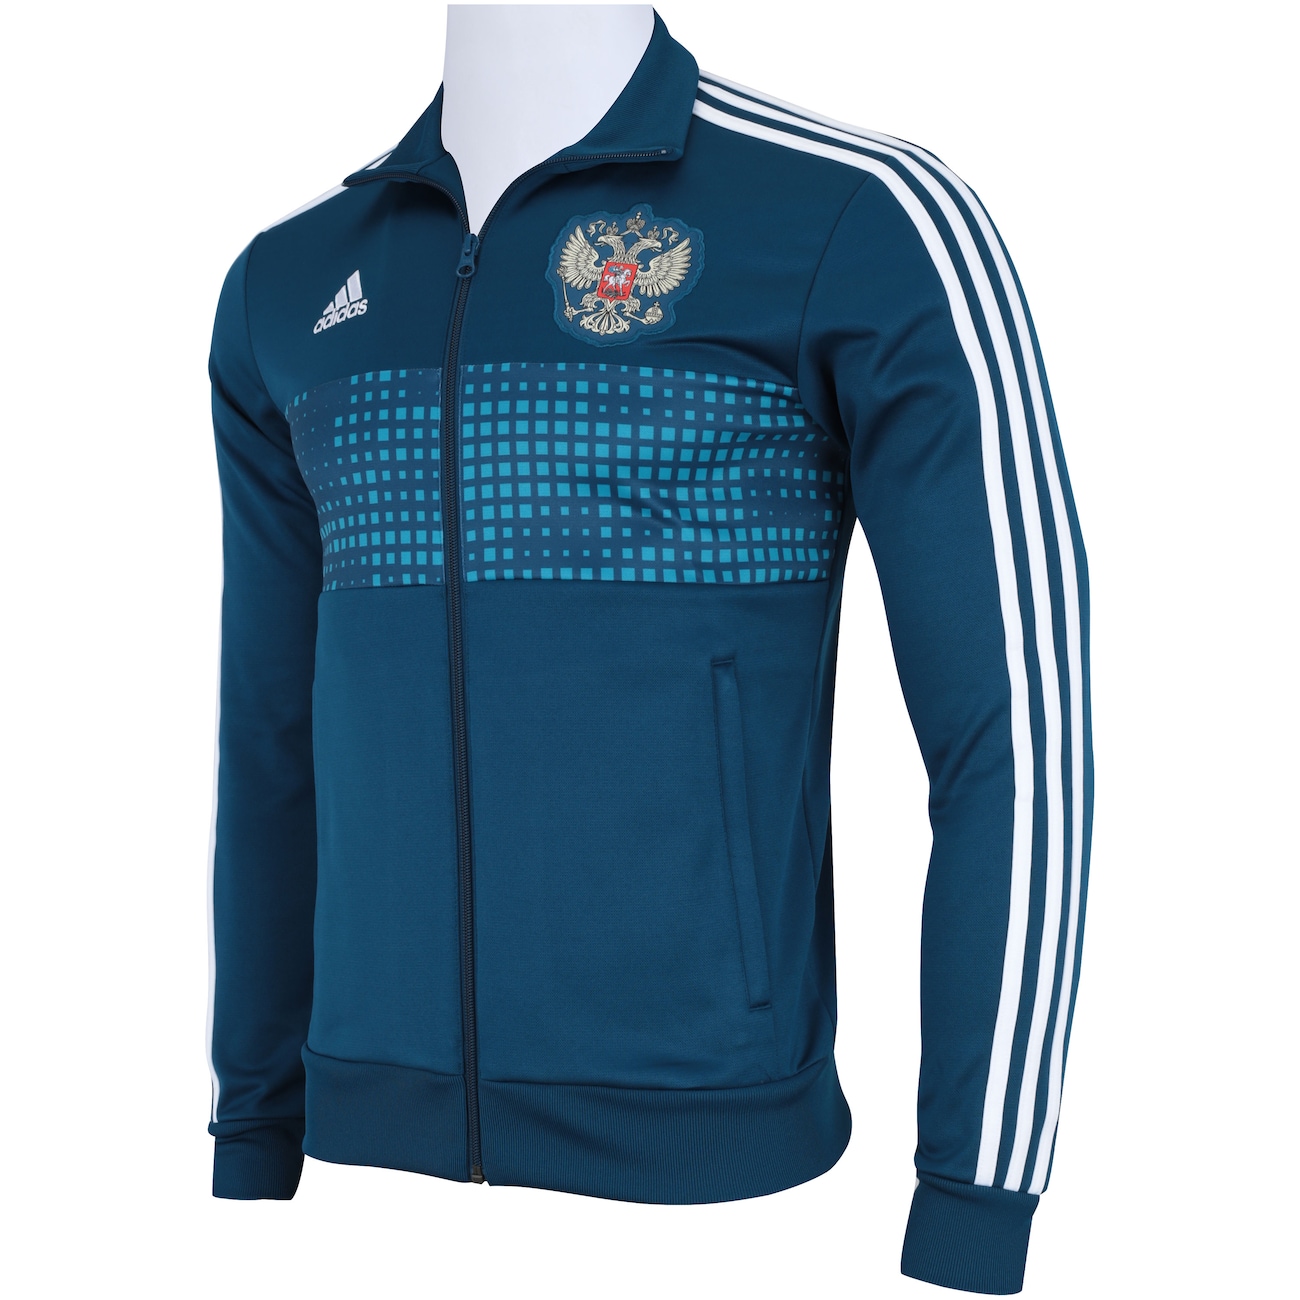 Адидас Россия. Adidas Russia кофта. Adidas Team олимпийка 2018 года футболка с длинным рукавом. Российский адидас